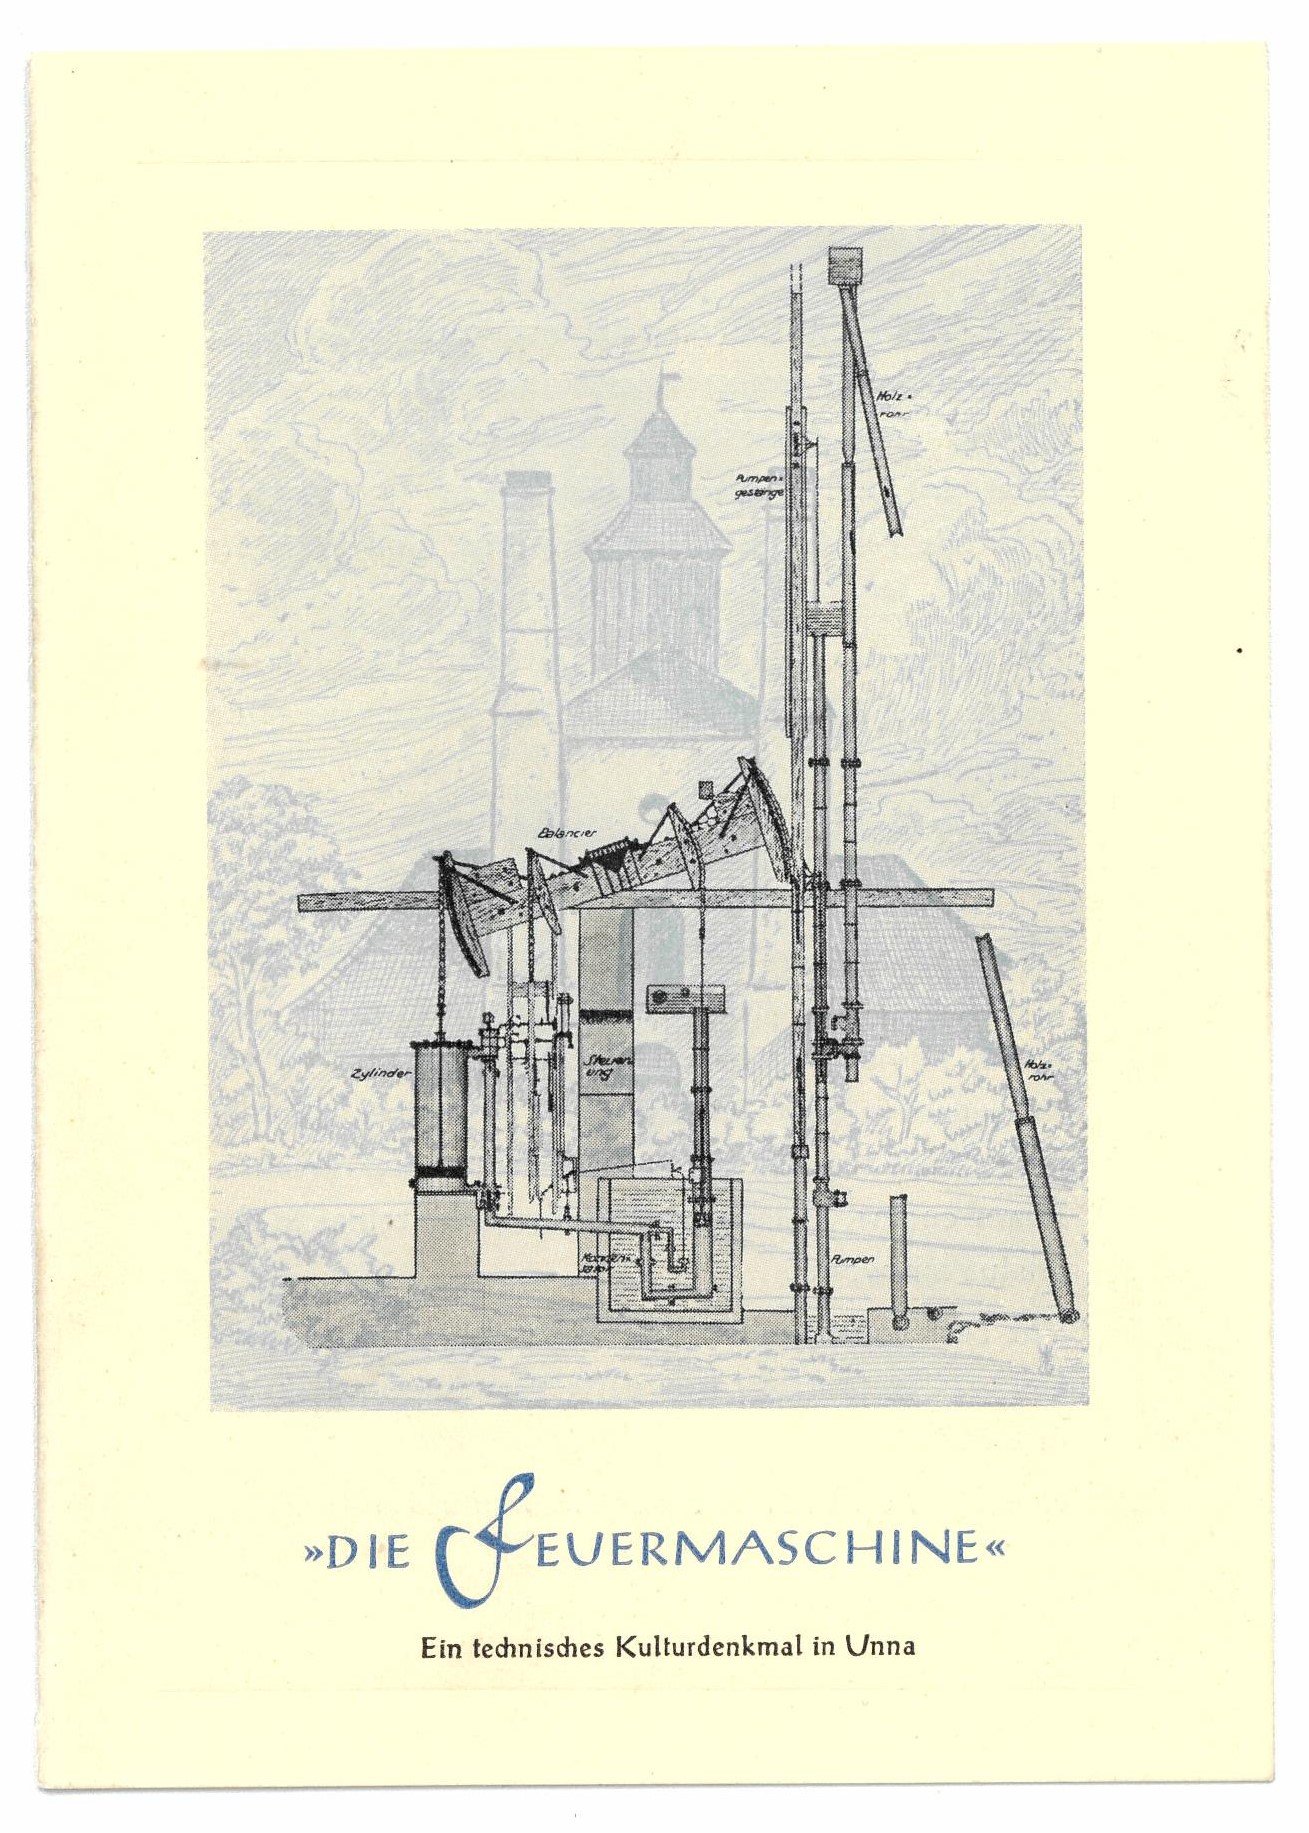 Glückwunschkarte "die Feuermaschine" (Hellweg-Museum Unna CC BY-NC-SA)